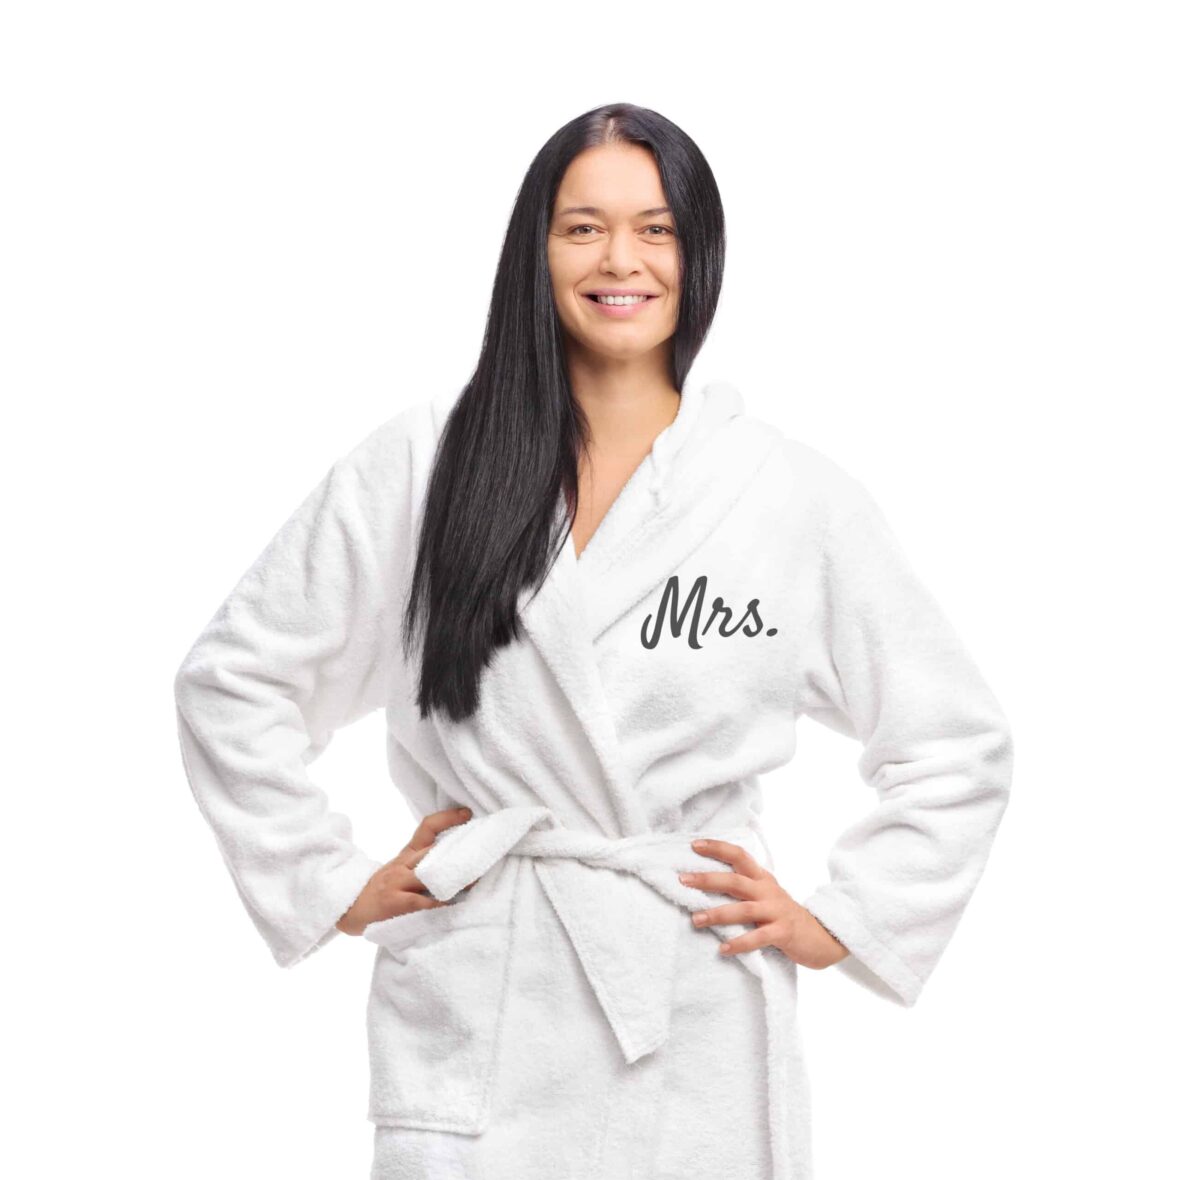 Cheerful woman in a white bathrobe